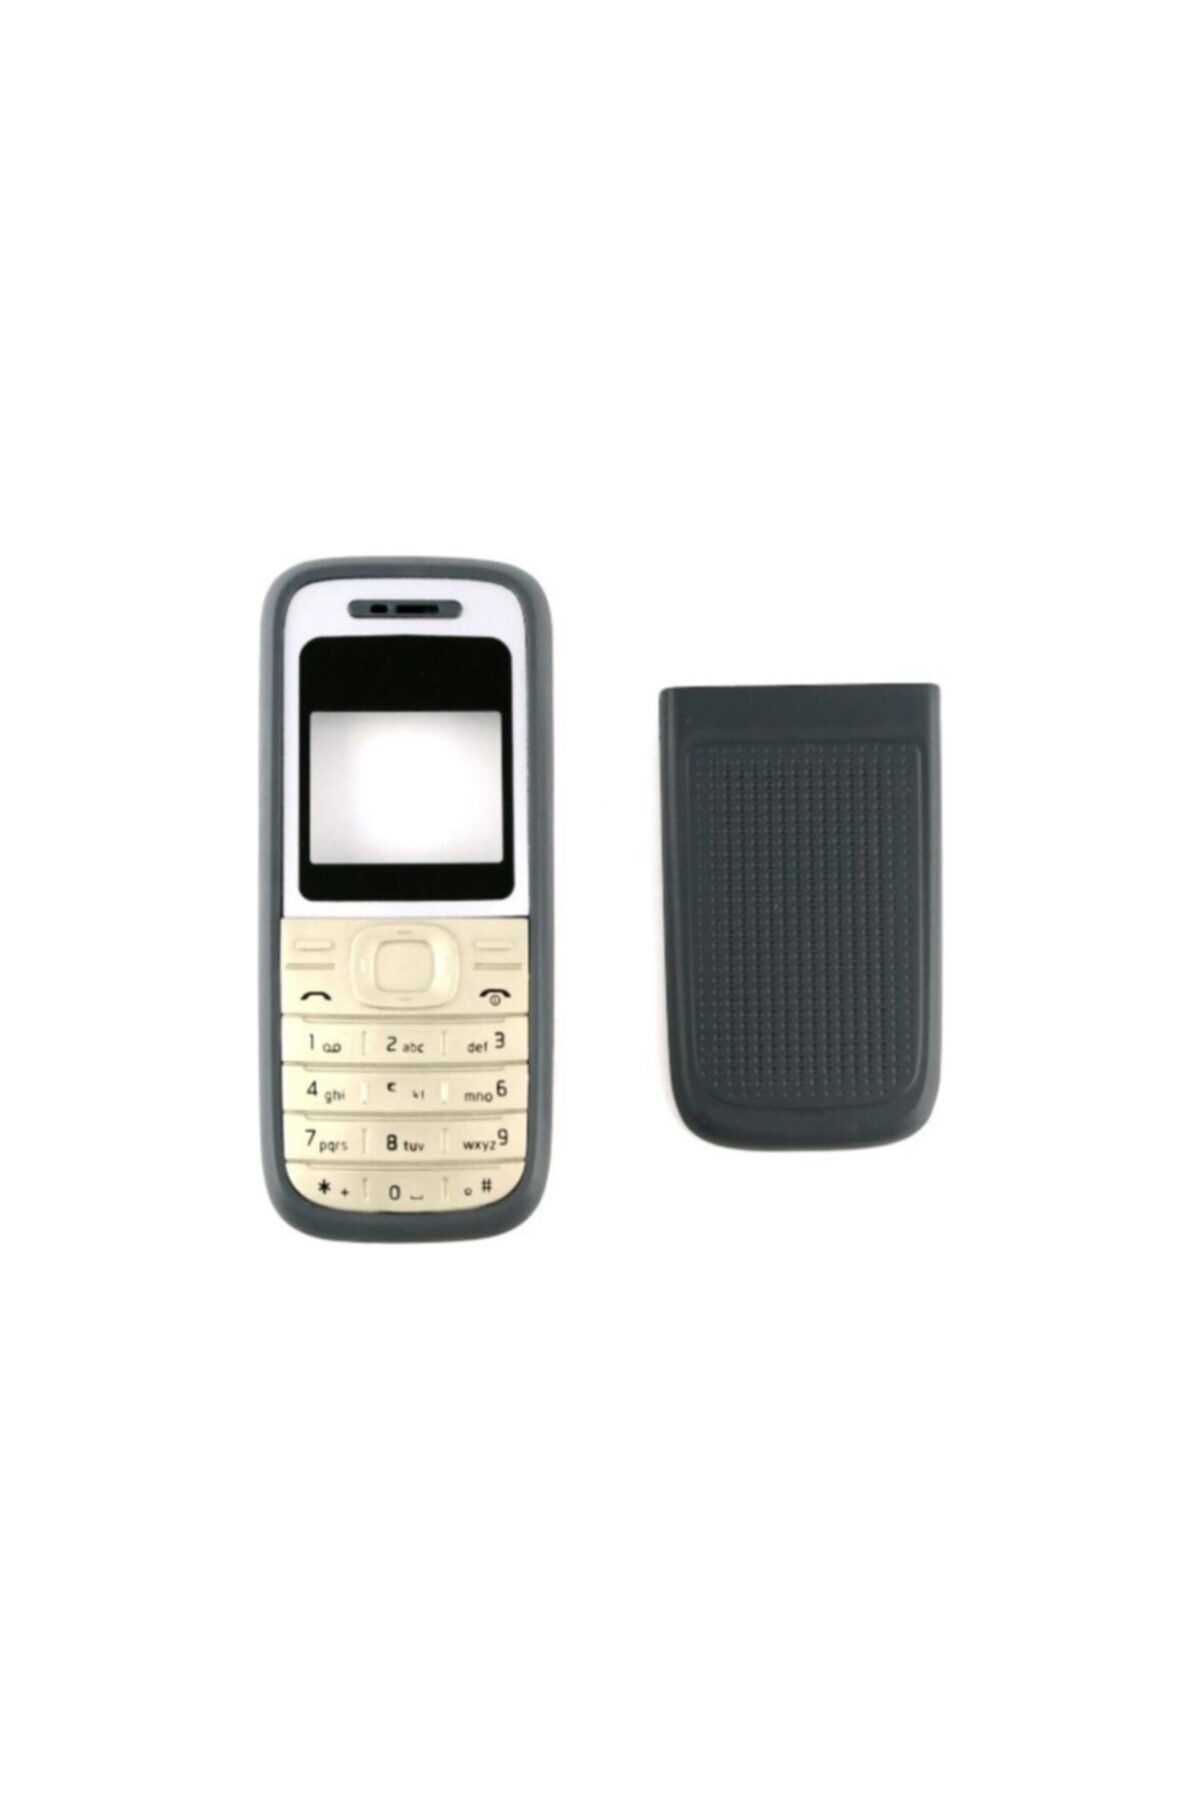 Nokia 1200 1208 1209 Kapak Ve Tuş Takımı